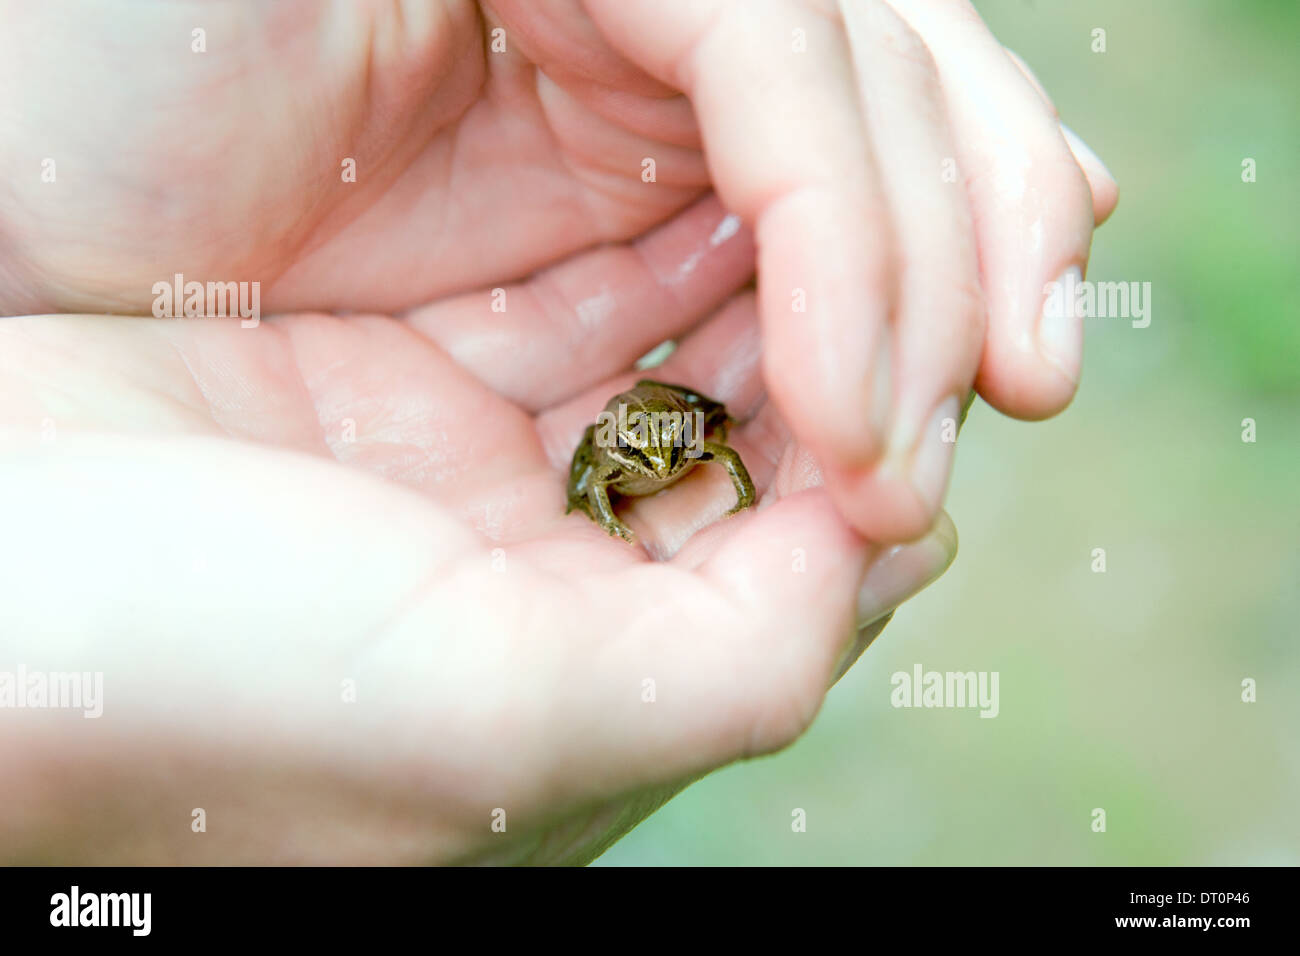 Petite grenouille dans la paume de la main Banque D'Images